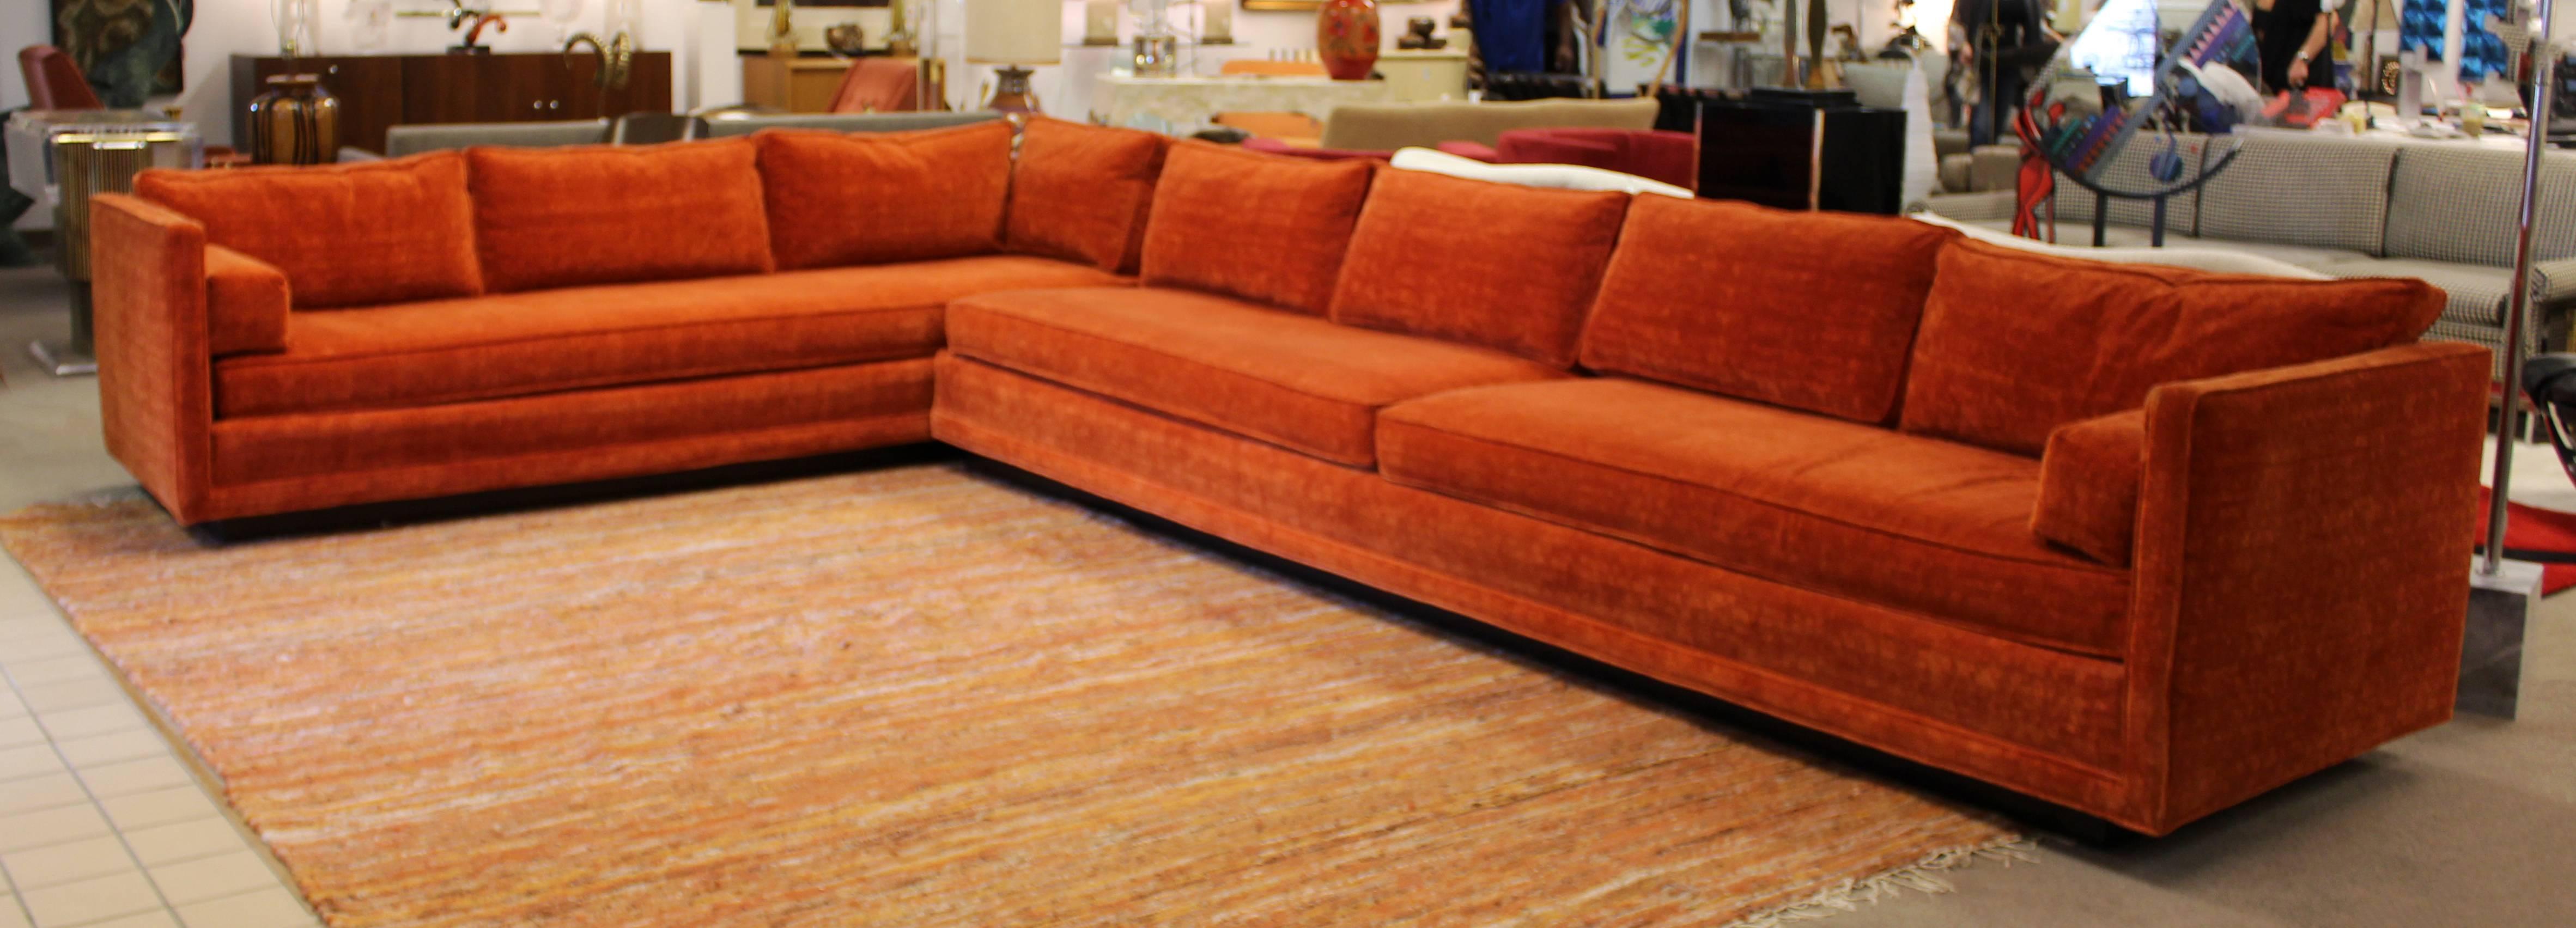 orange velvet sectional sofa